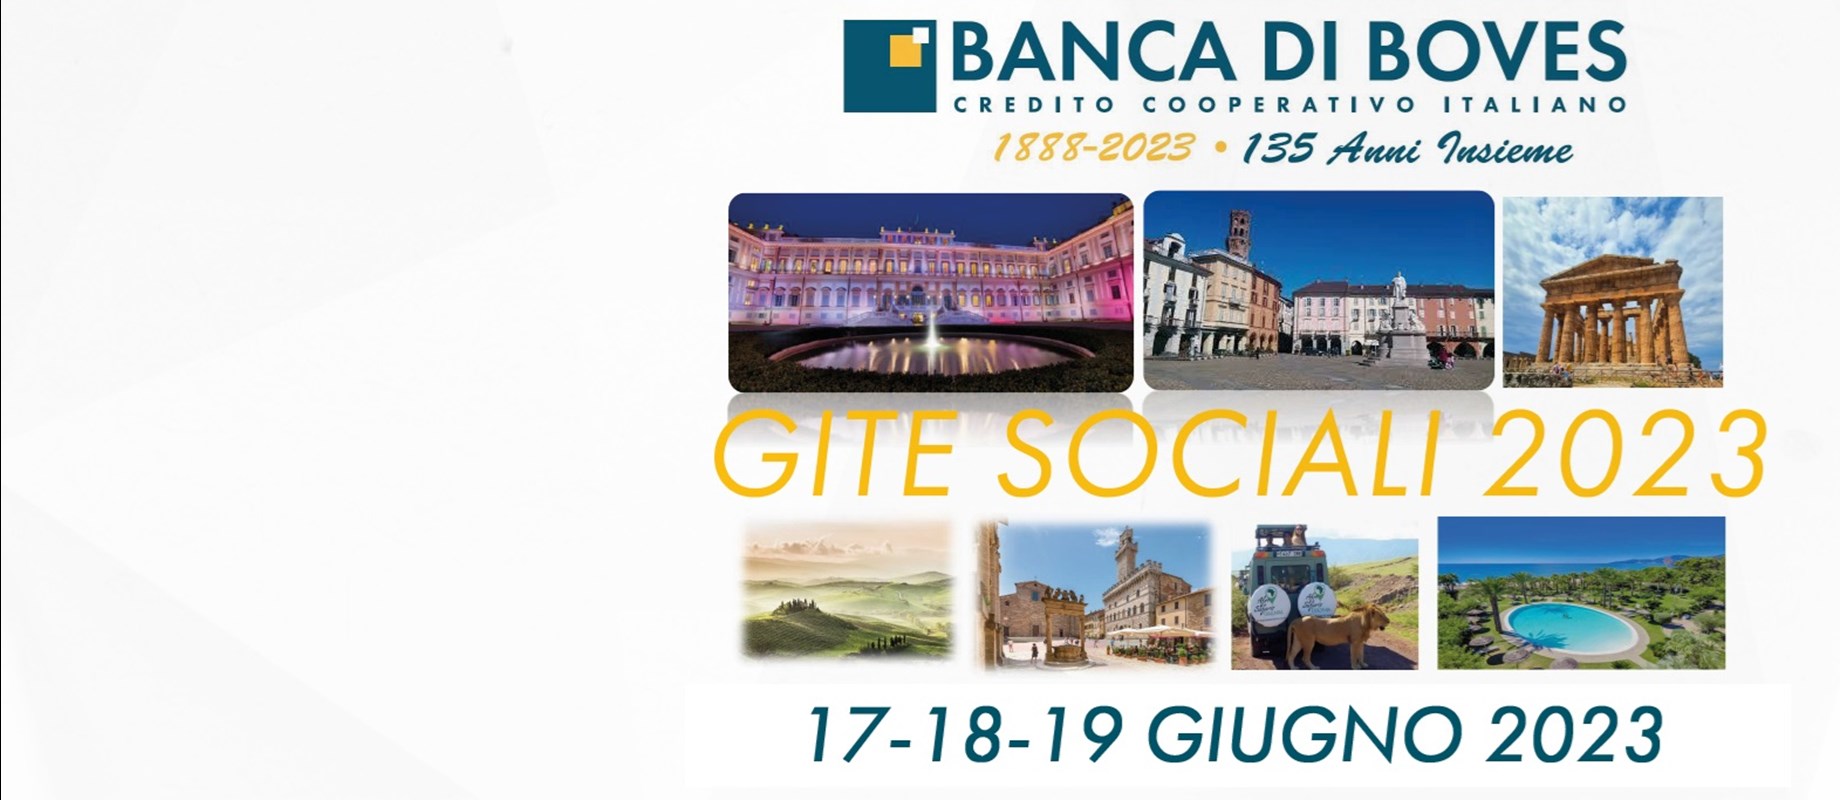 La Banca di Boves per il 2023 ha organizzato per i Soci e per i Clienti 3 gite sociali , previste per il mese di giugno e 2 soggiorni in programma in autunno... 